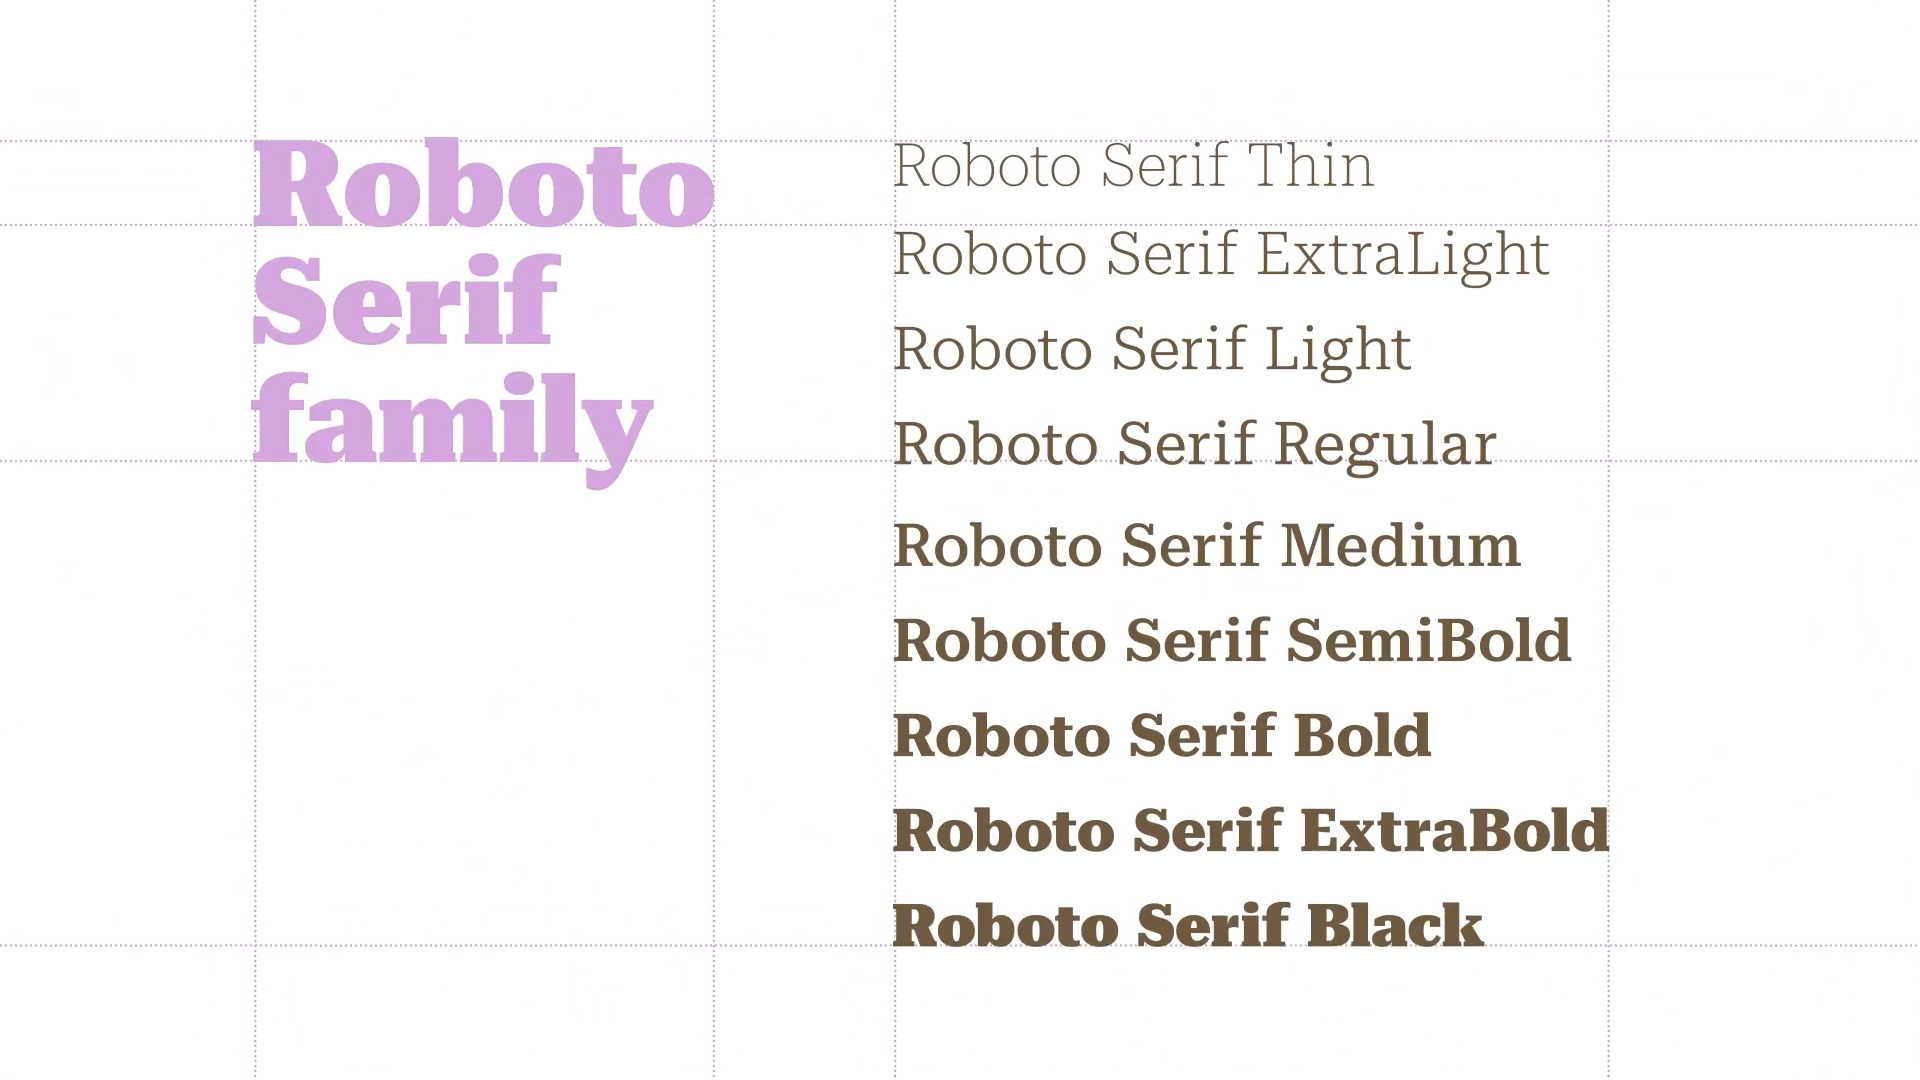 Roboto Serif family